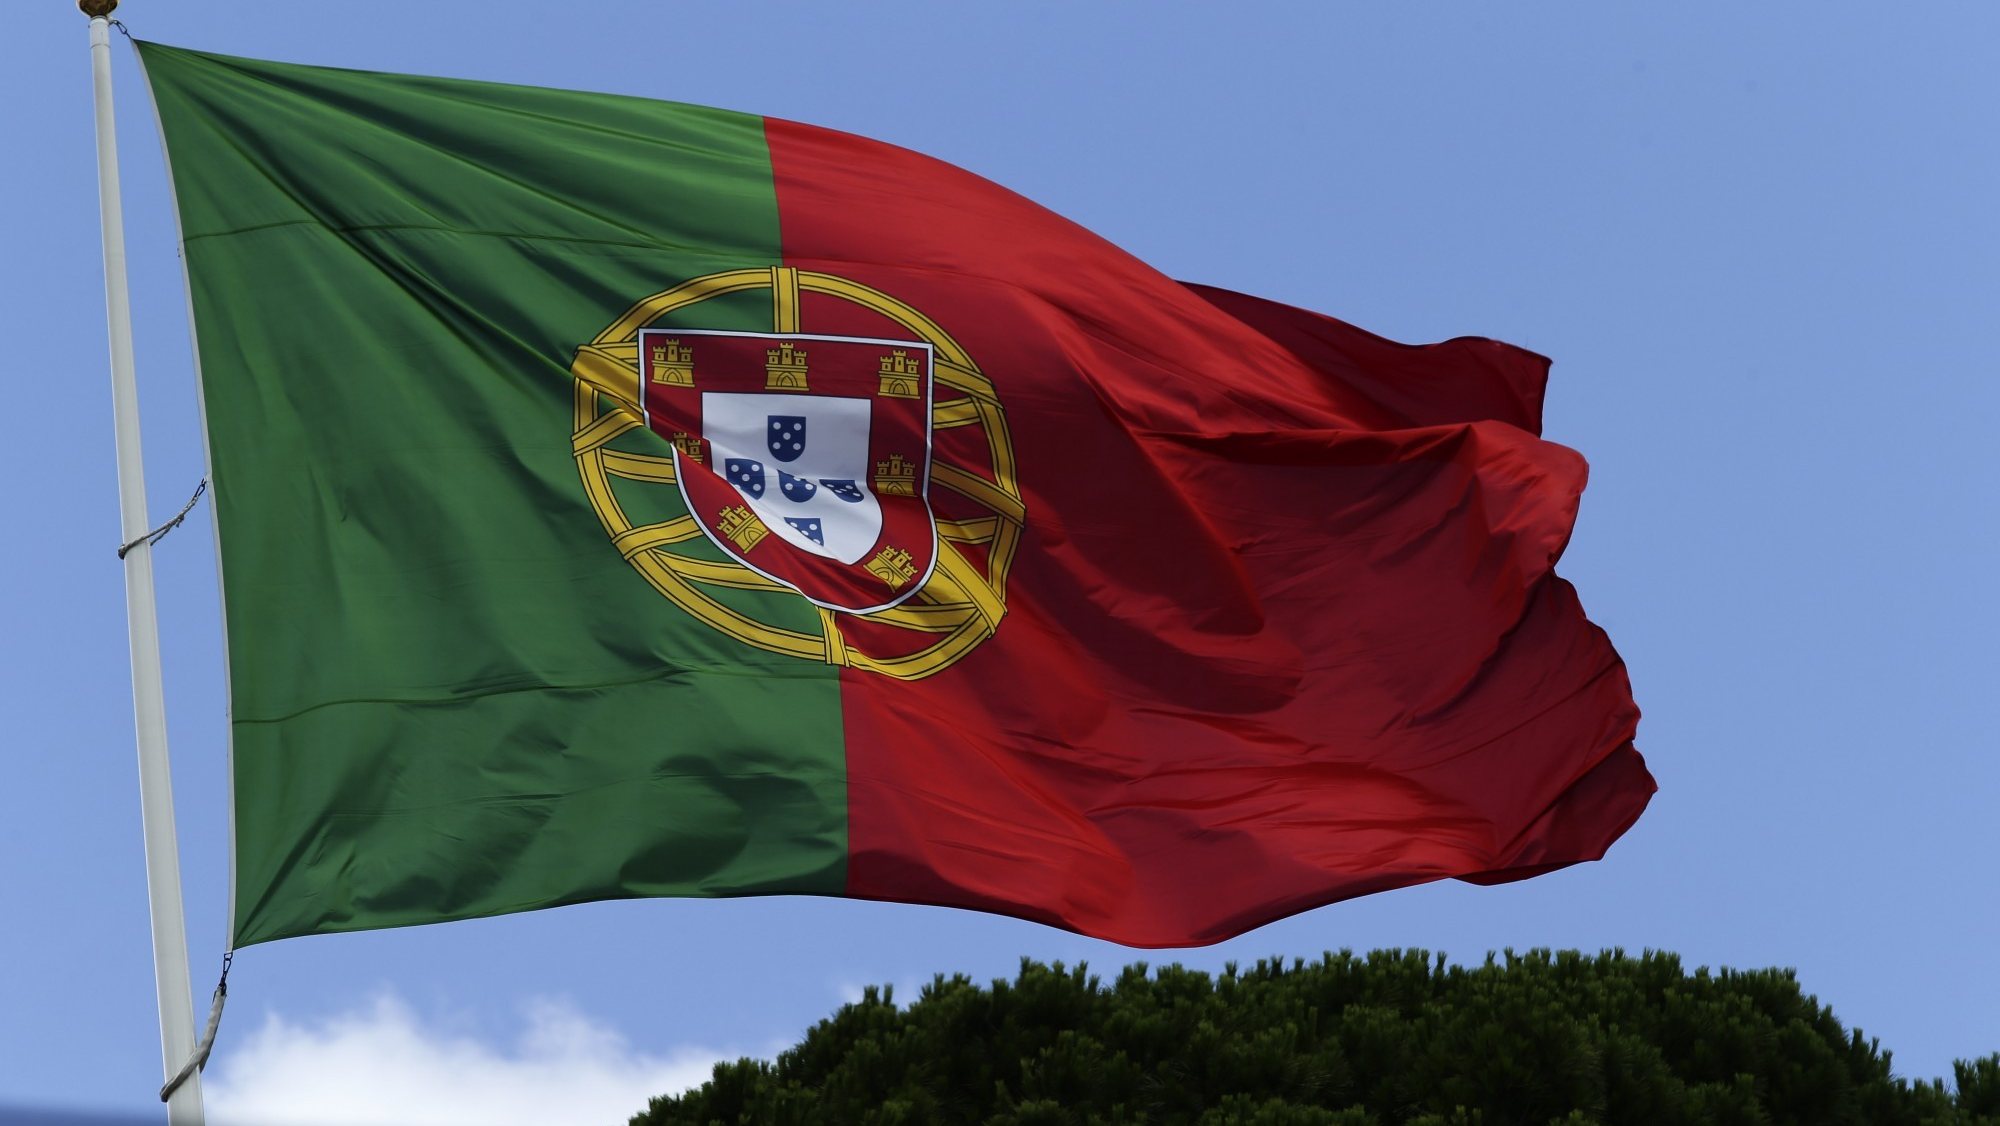 Bandeira de Portugal hasteada no Palácio de Belém, lisboa, 02 de julho de 2014. ANTÓNIO COTRIM/LUSA